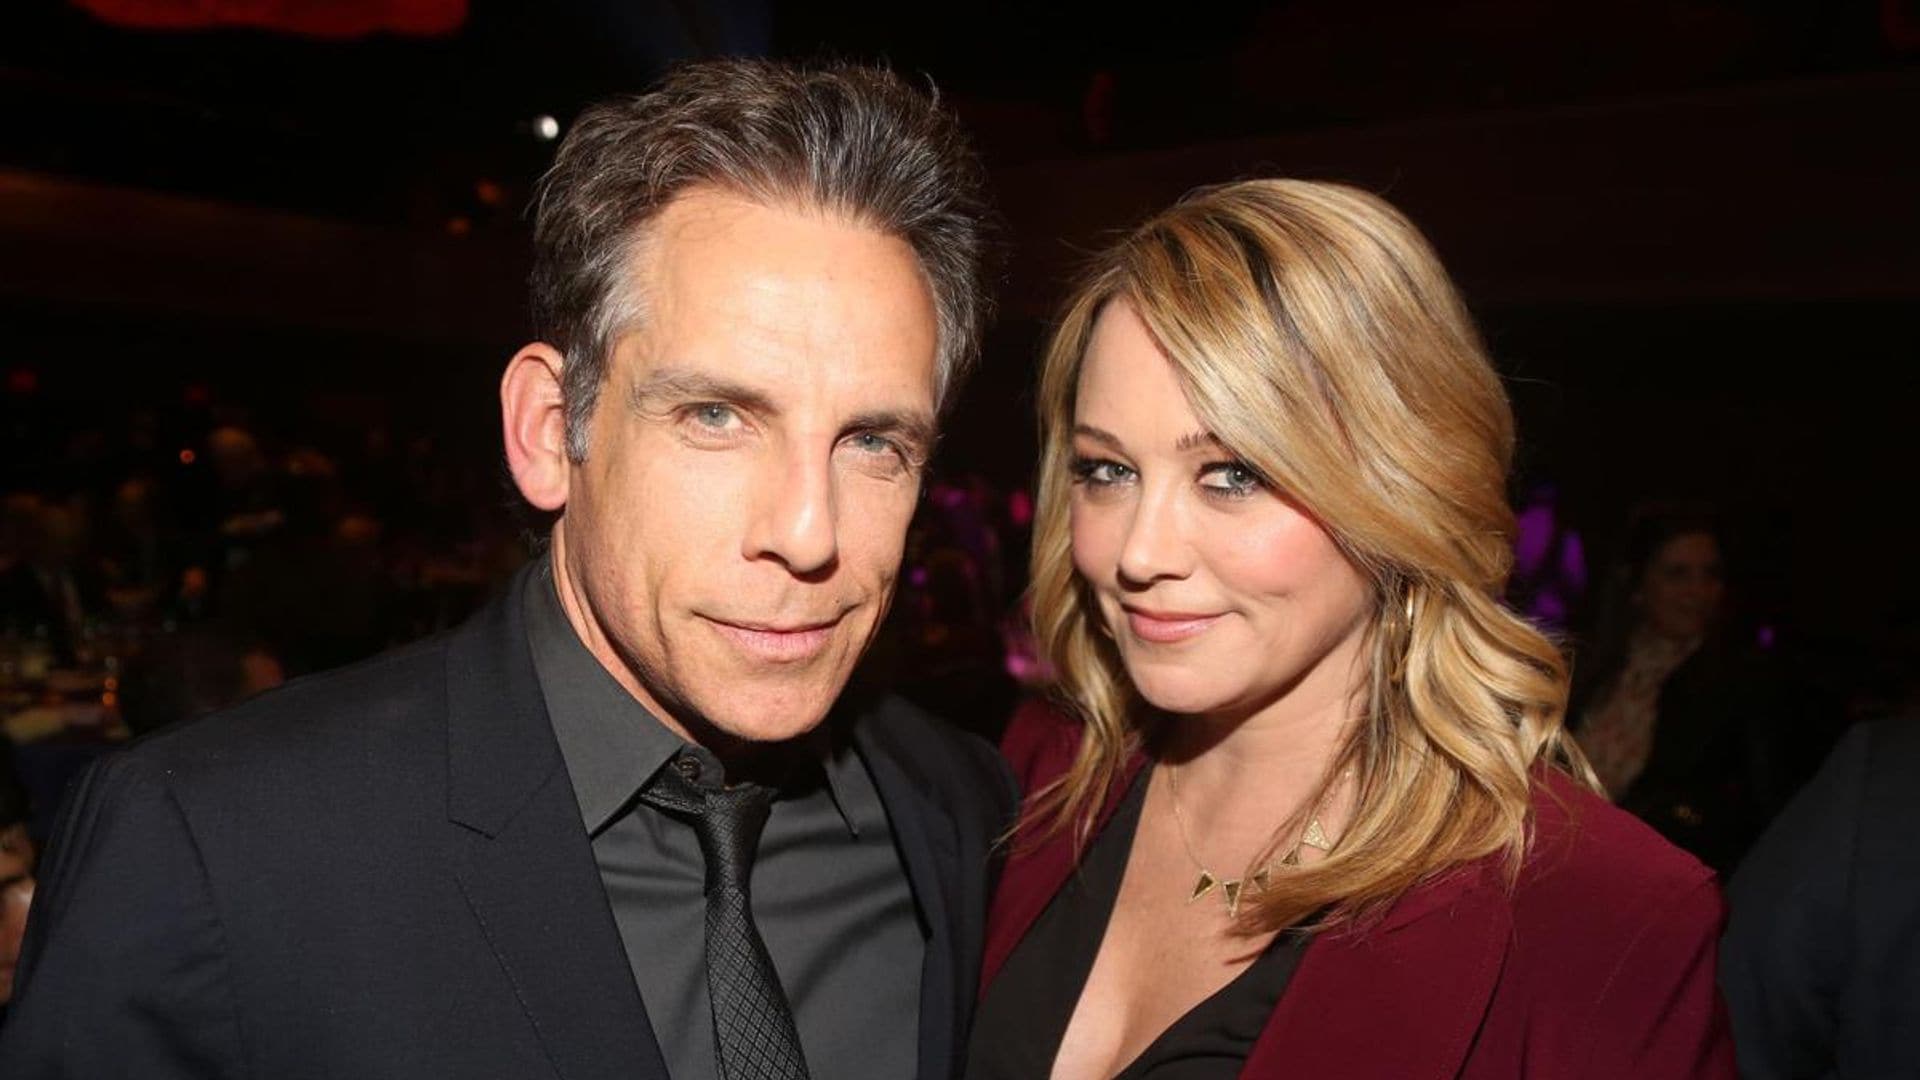 Ben Stiller and estranged wife Christine Taylor are back together after 2017 split